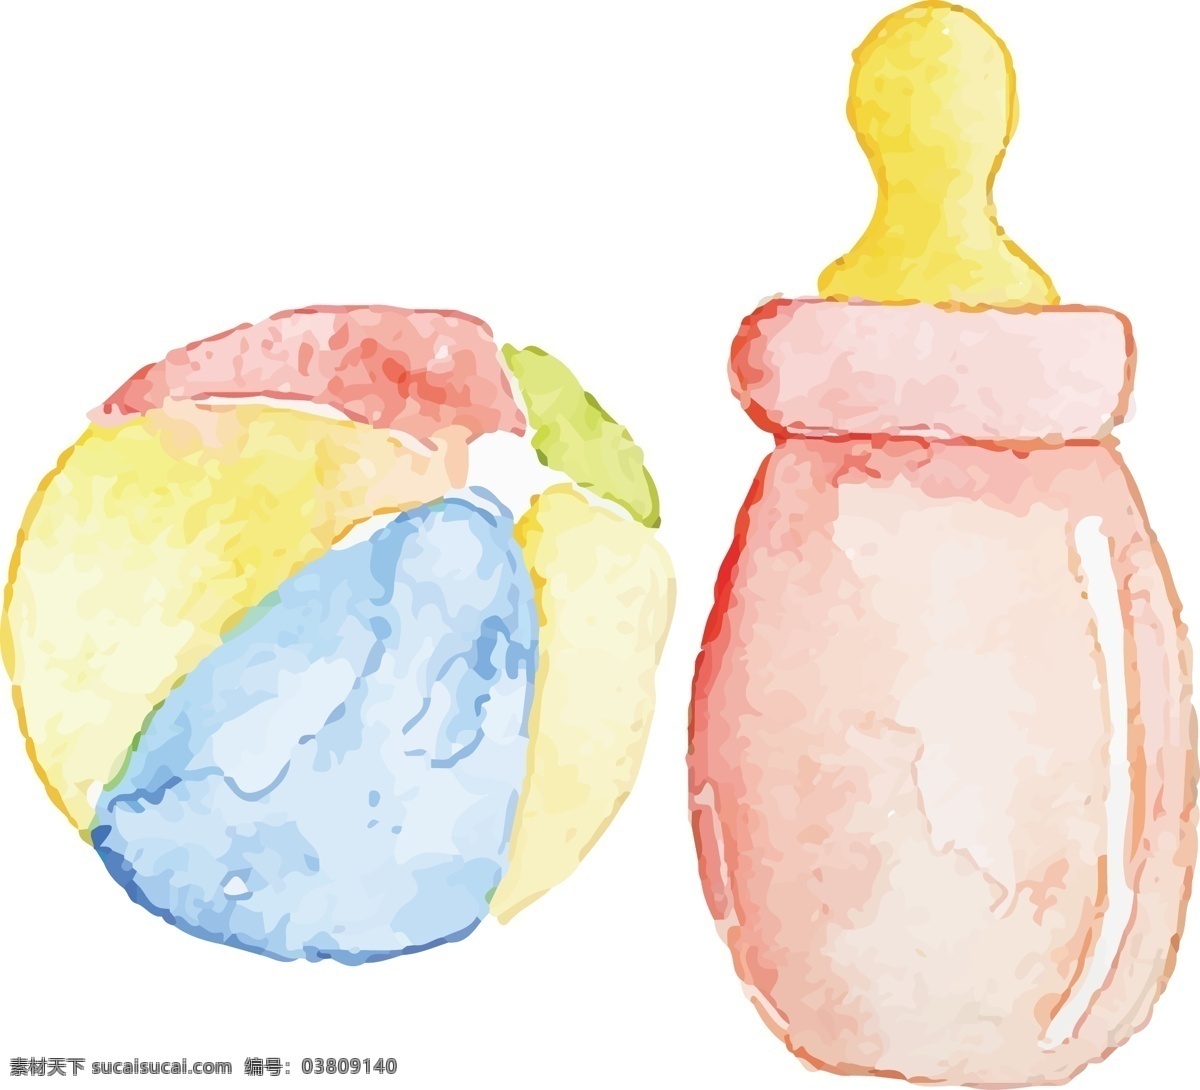 婴儿奶瓶插画 婴儿用品 奶瓶 玩具 皮球 儿童玩具 生活百科 生活用品